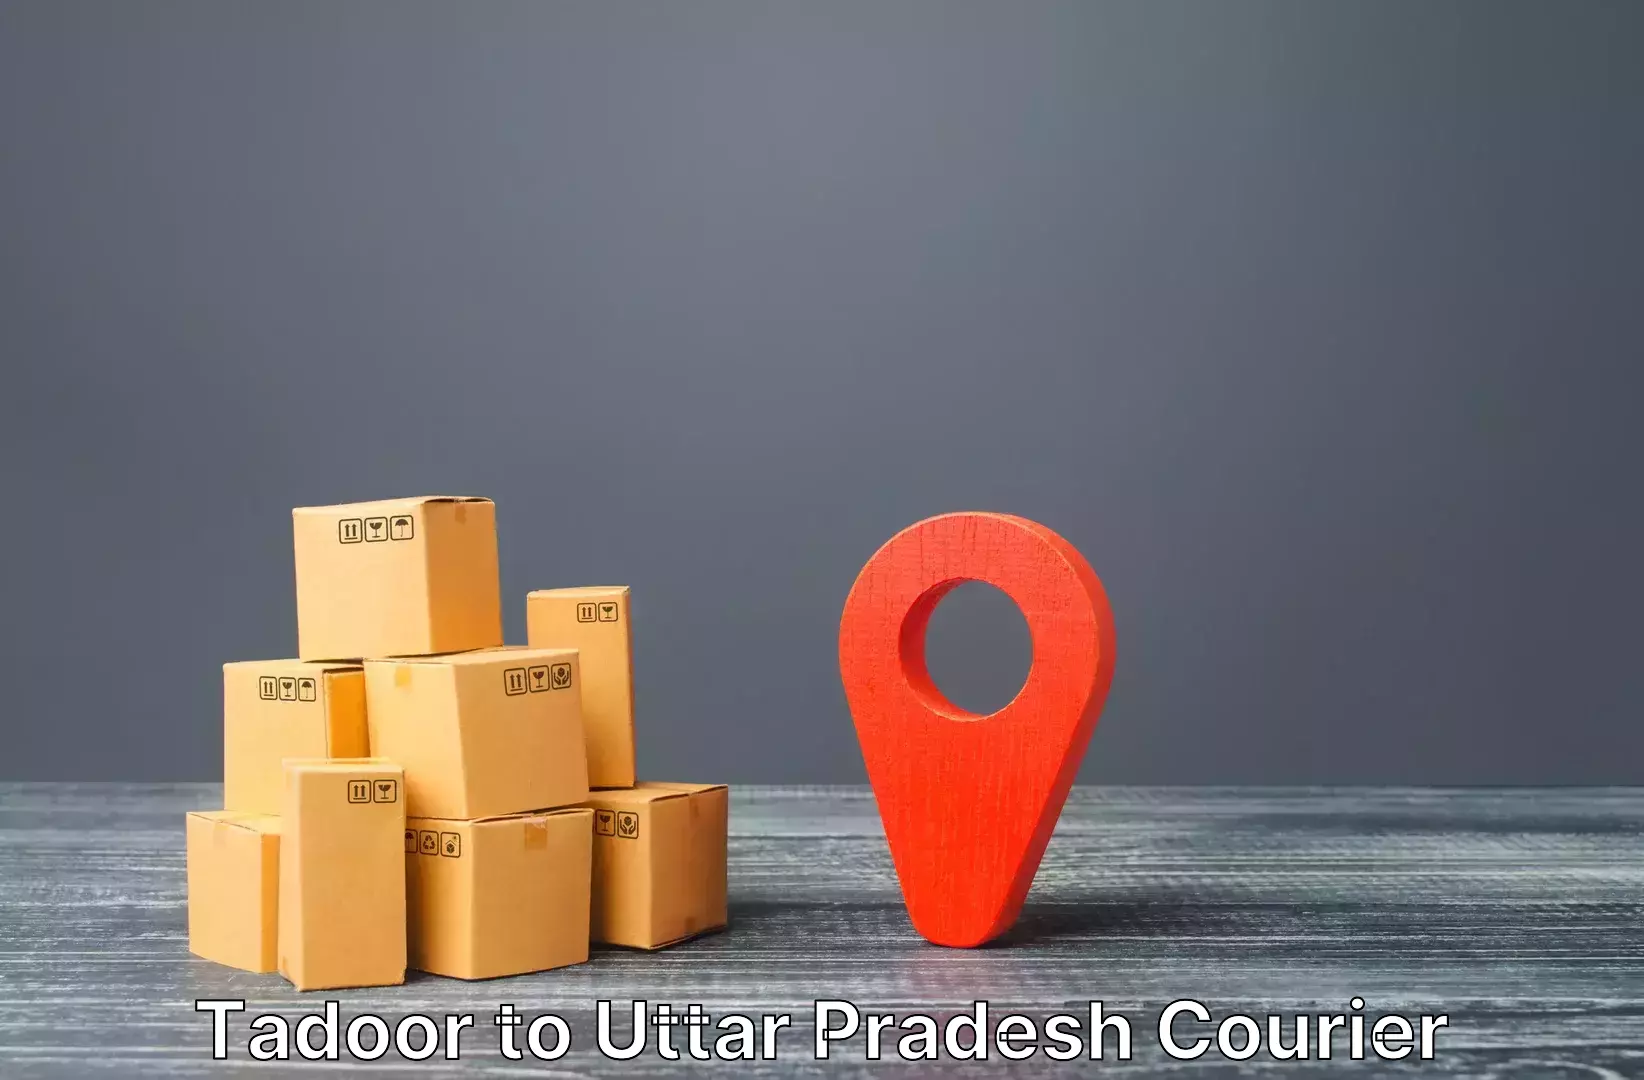 Efficient baggage courier system Tadoor to Gauri Bazar